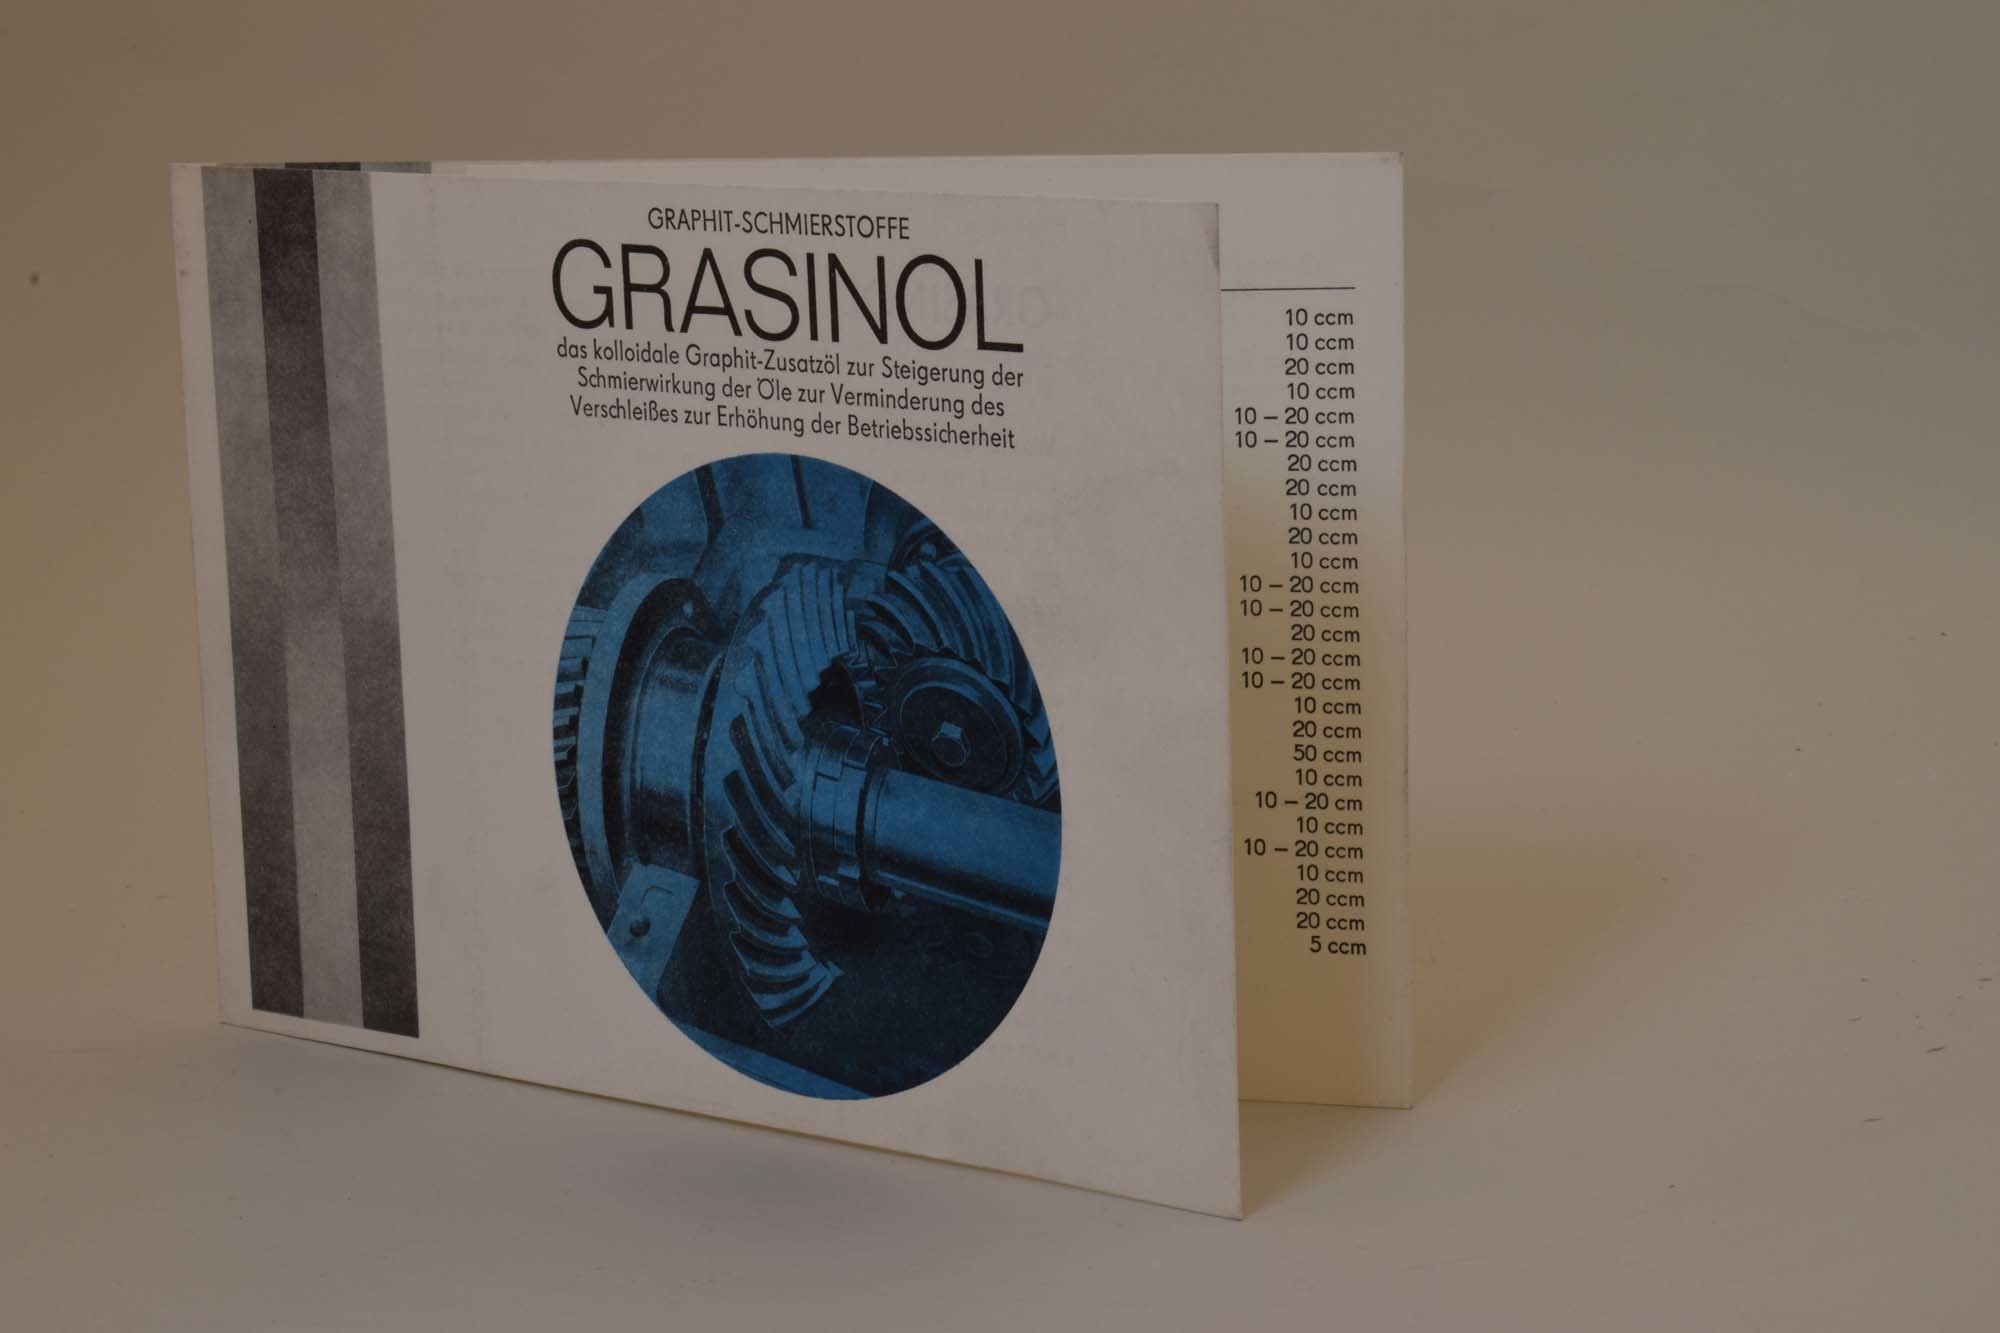 Bedienungsanleitung/Benutzungshinweise für Grasinol 1979 (Heimatmuseum Dohna CC BY-NC-SA)